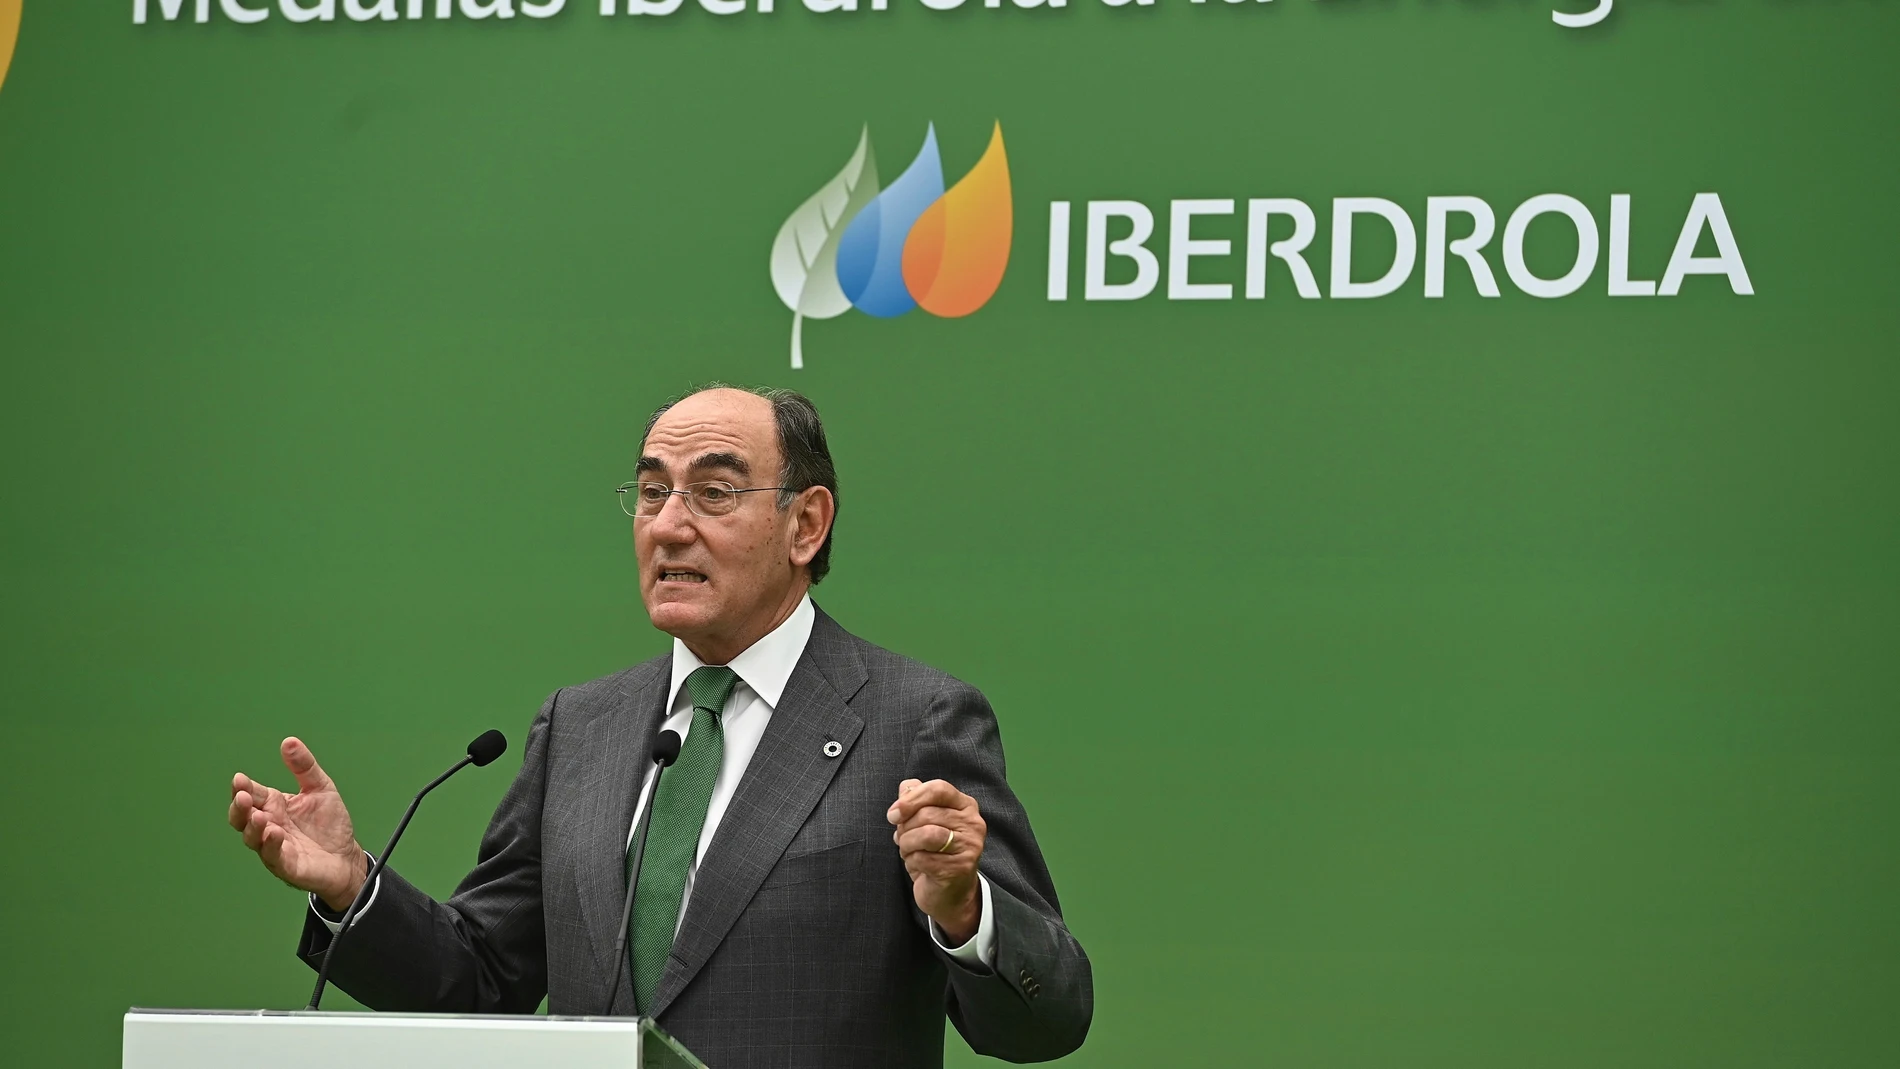 El presidente de Iberdrola, Ignacio Galá